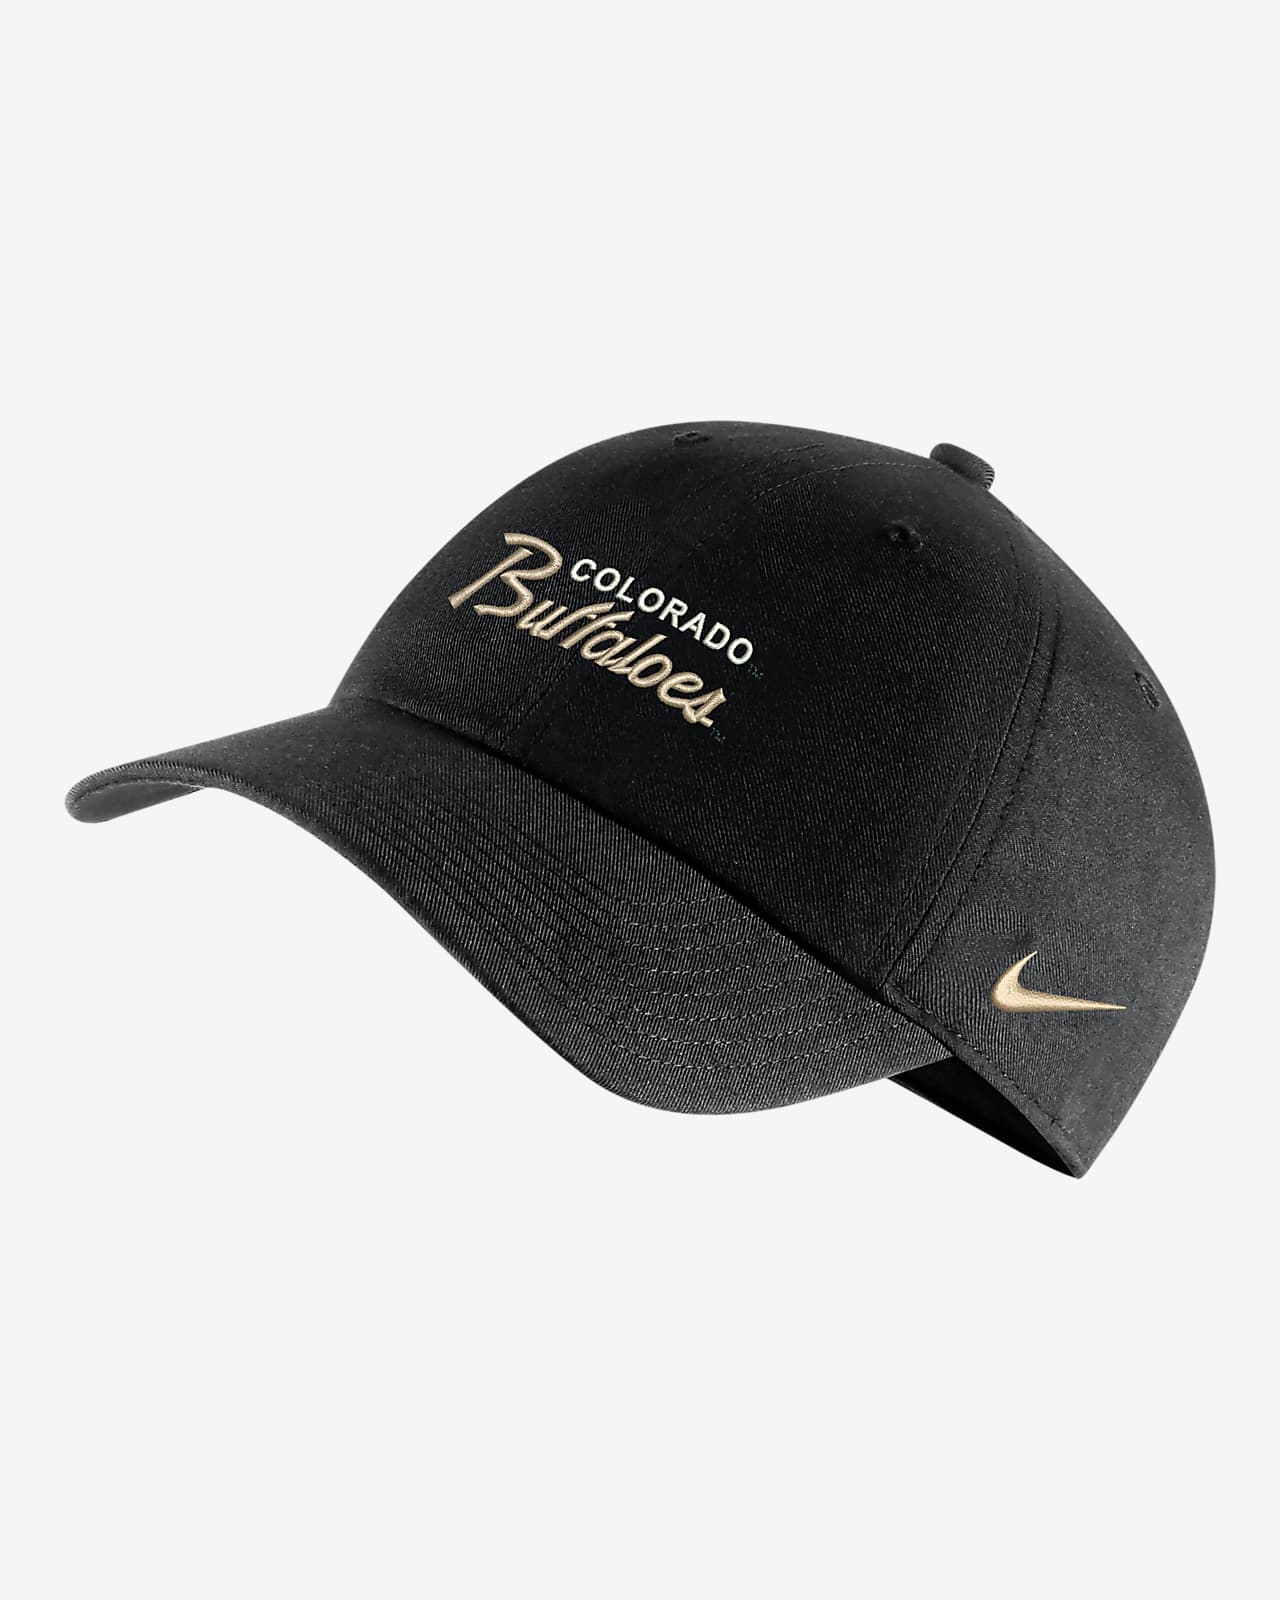 Colorado Campus 365 Nike College Adjustable Hat